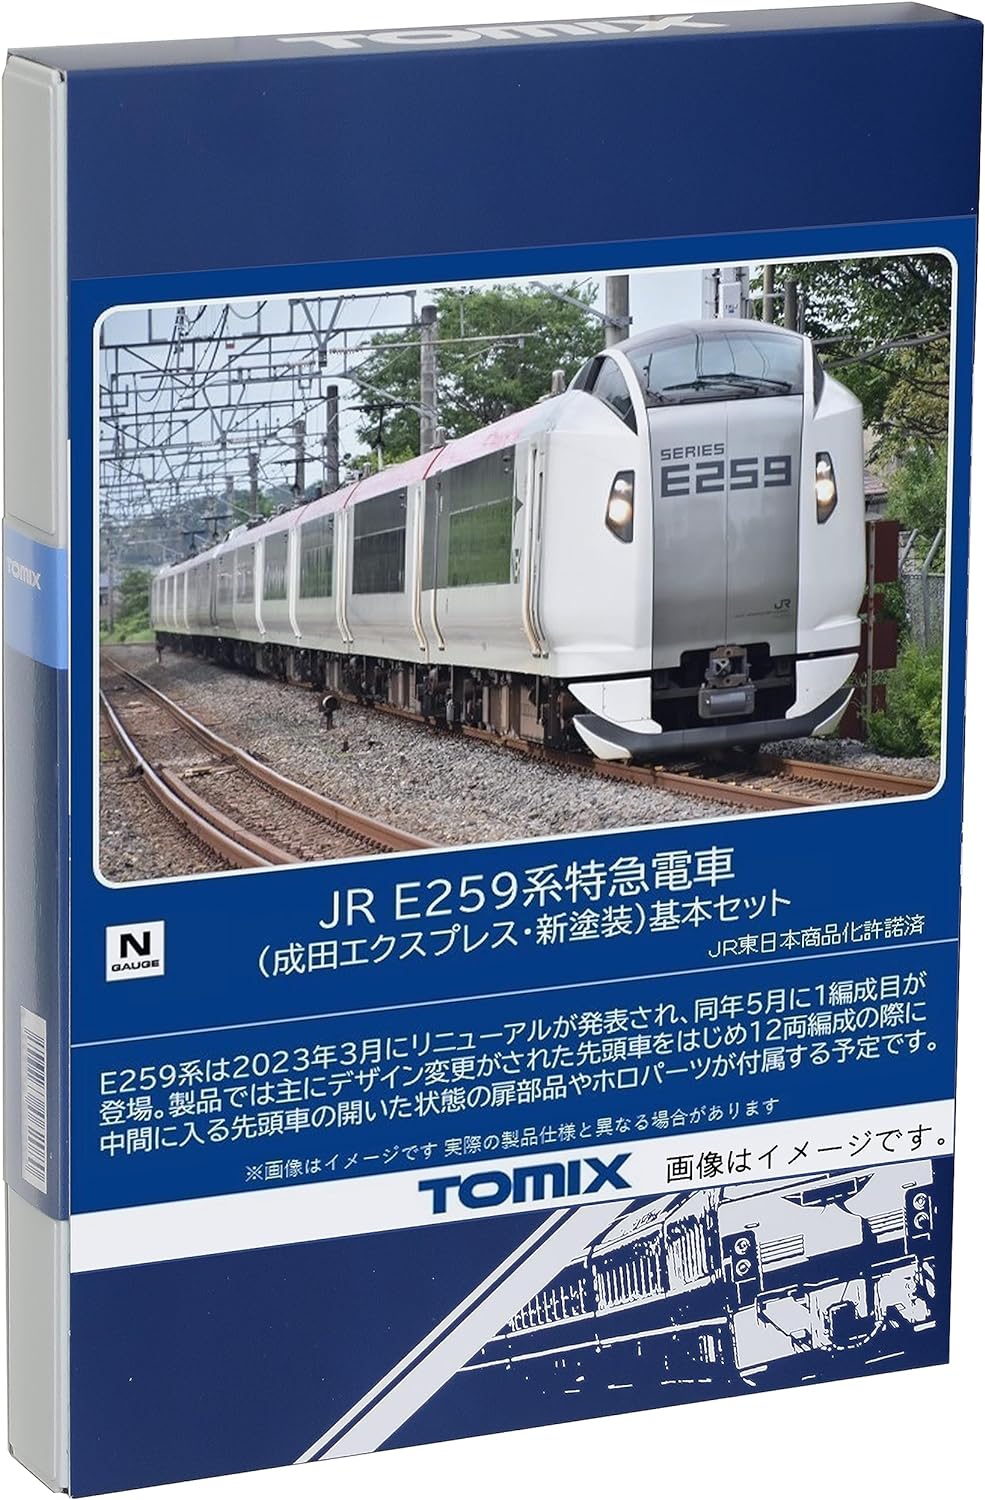 TOMIX 98552 N Gauge JR E259 Series Narita Express New Paint Extension Set Railway Model Train - BanzaiHobby